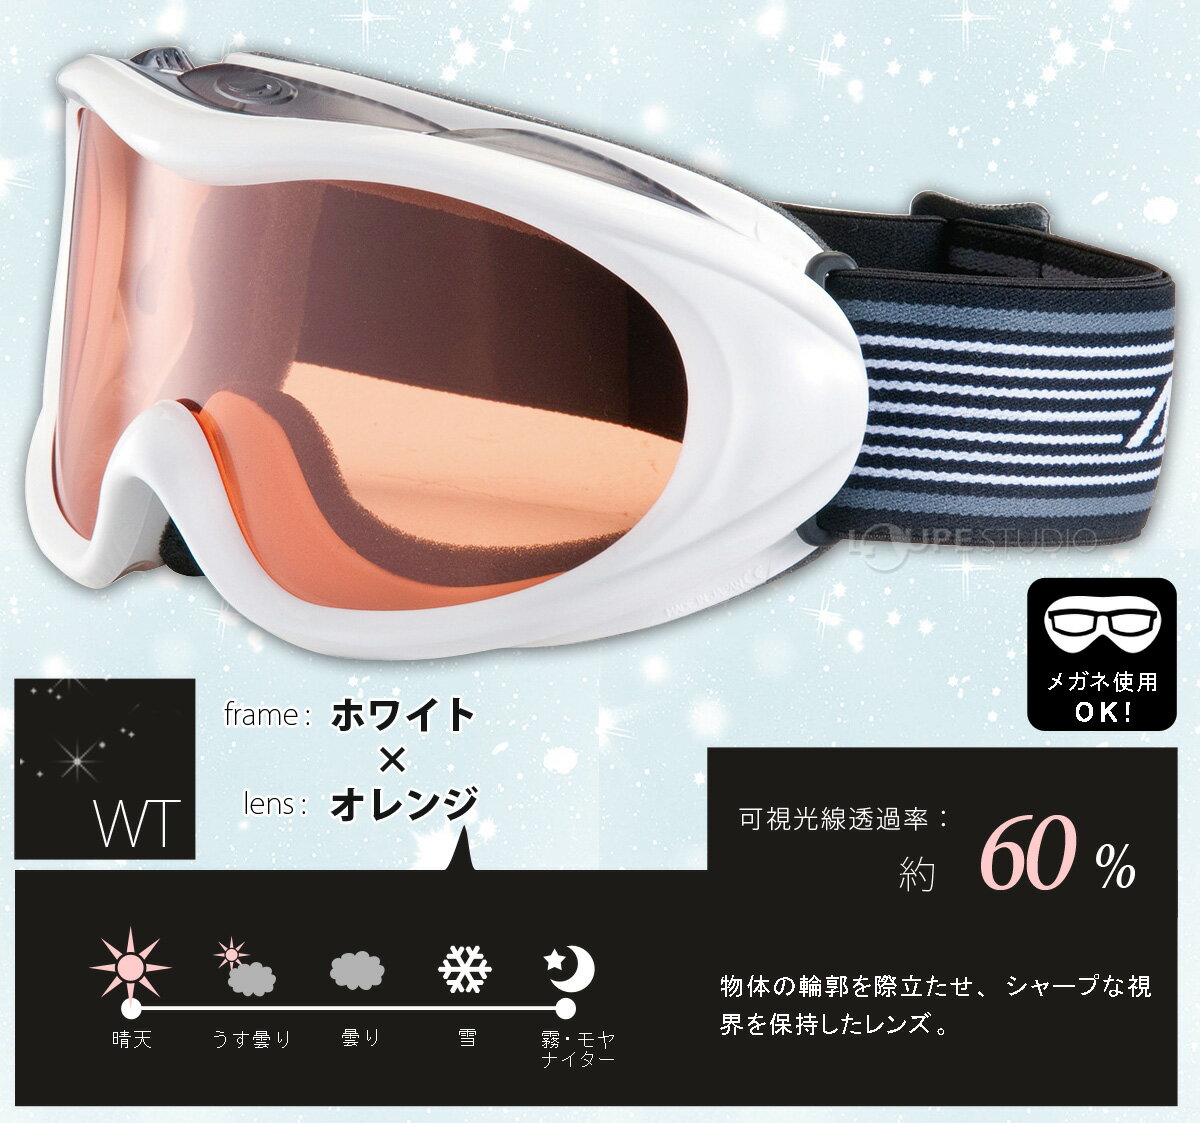 ゴーグル 眼鏡対応 AX460-ST スキー ...の紹介画像3